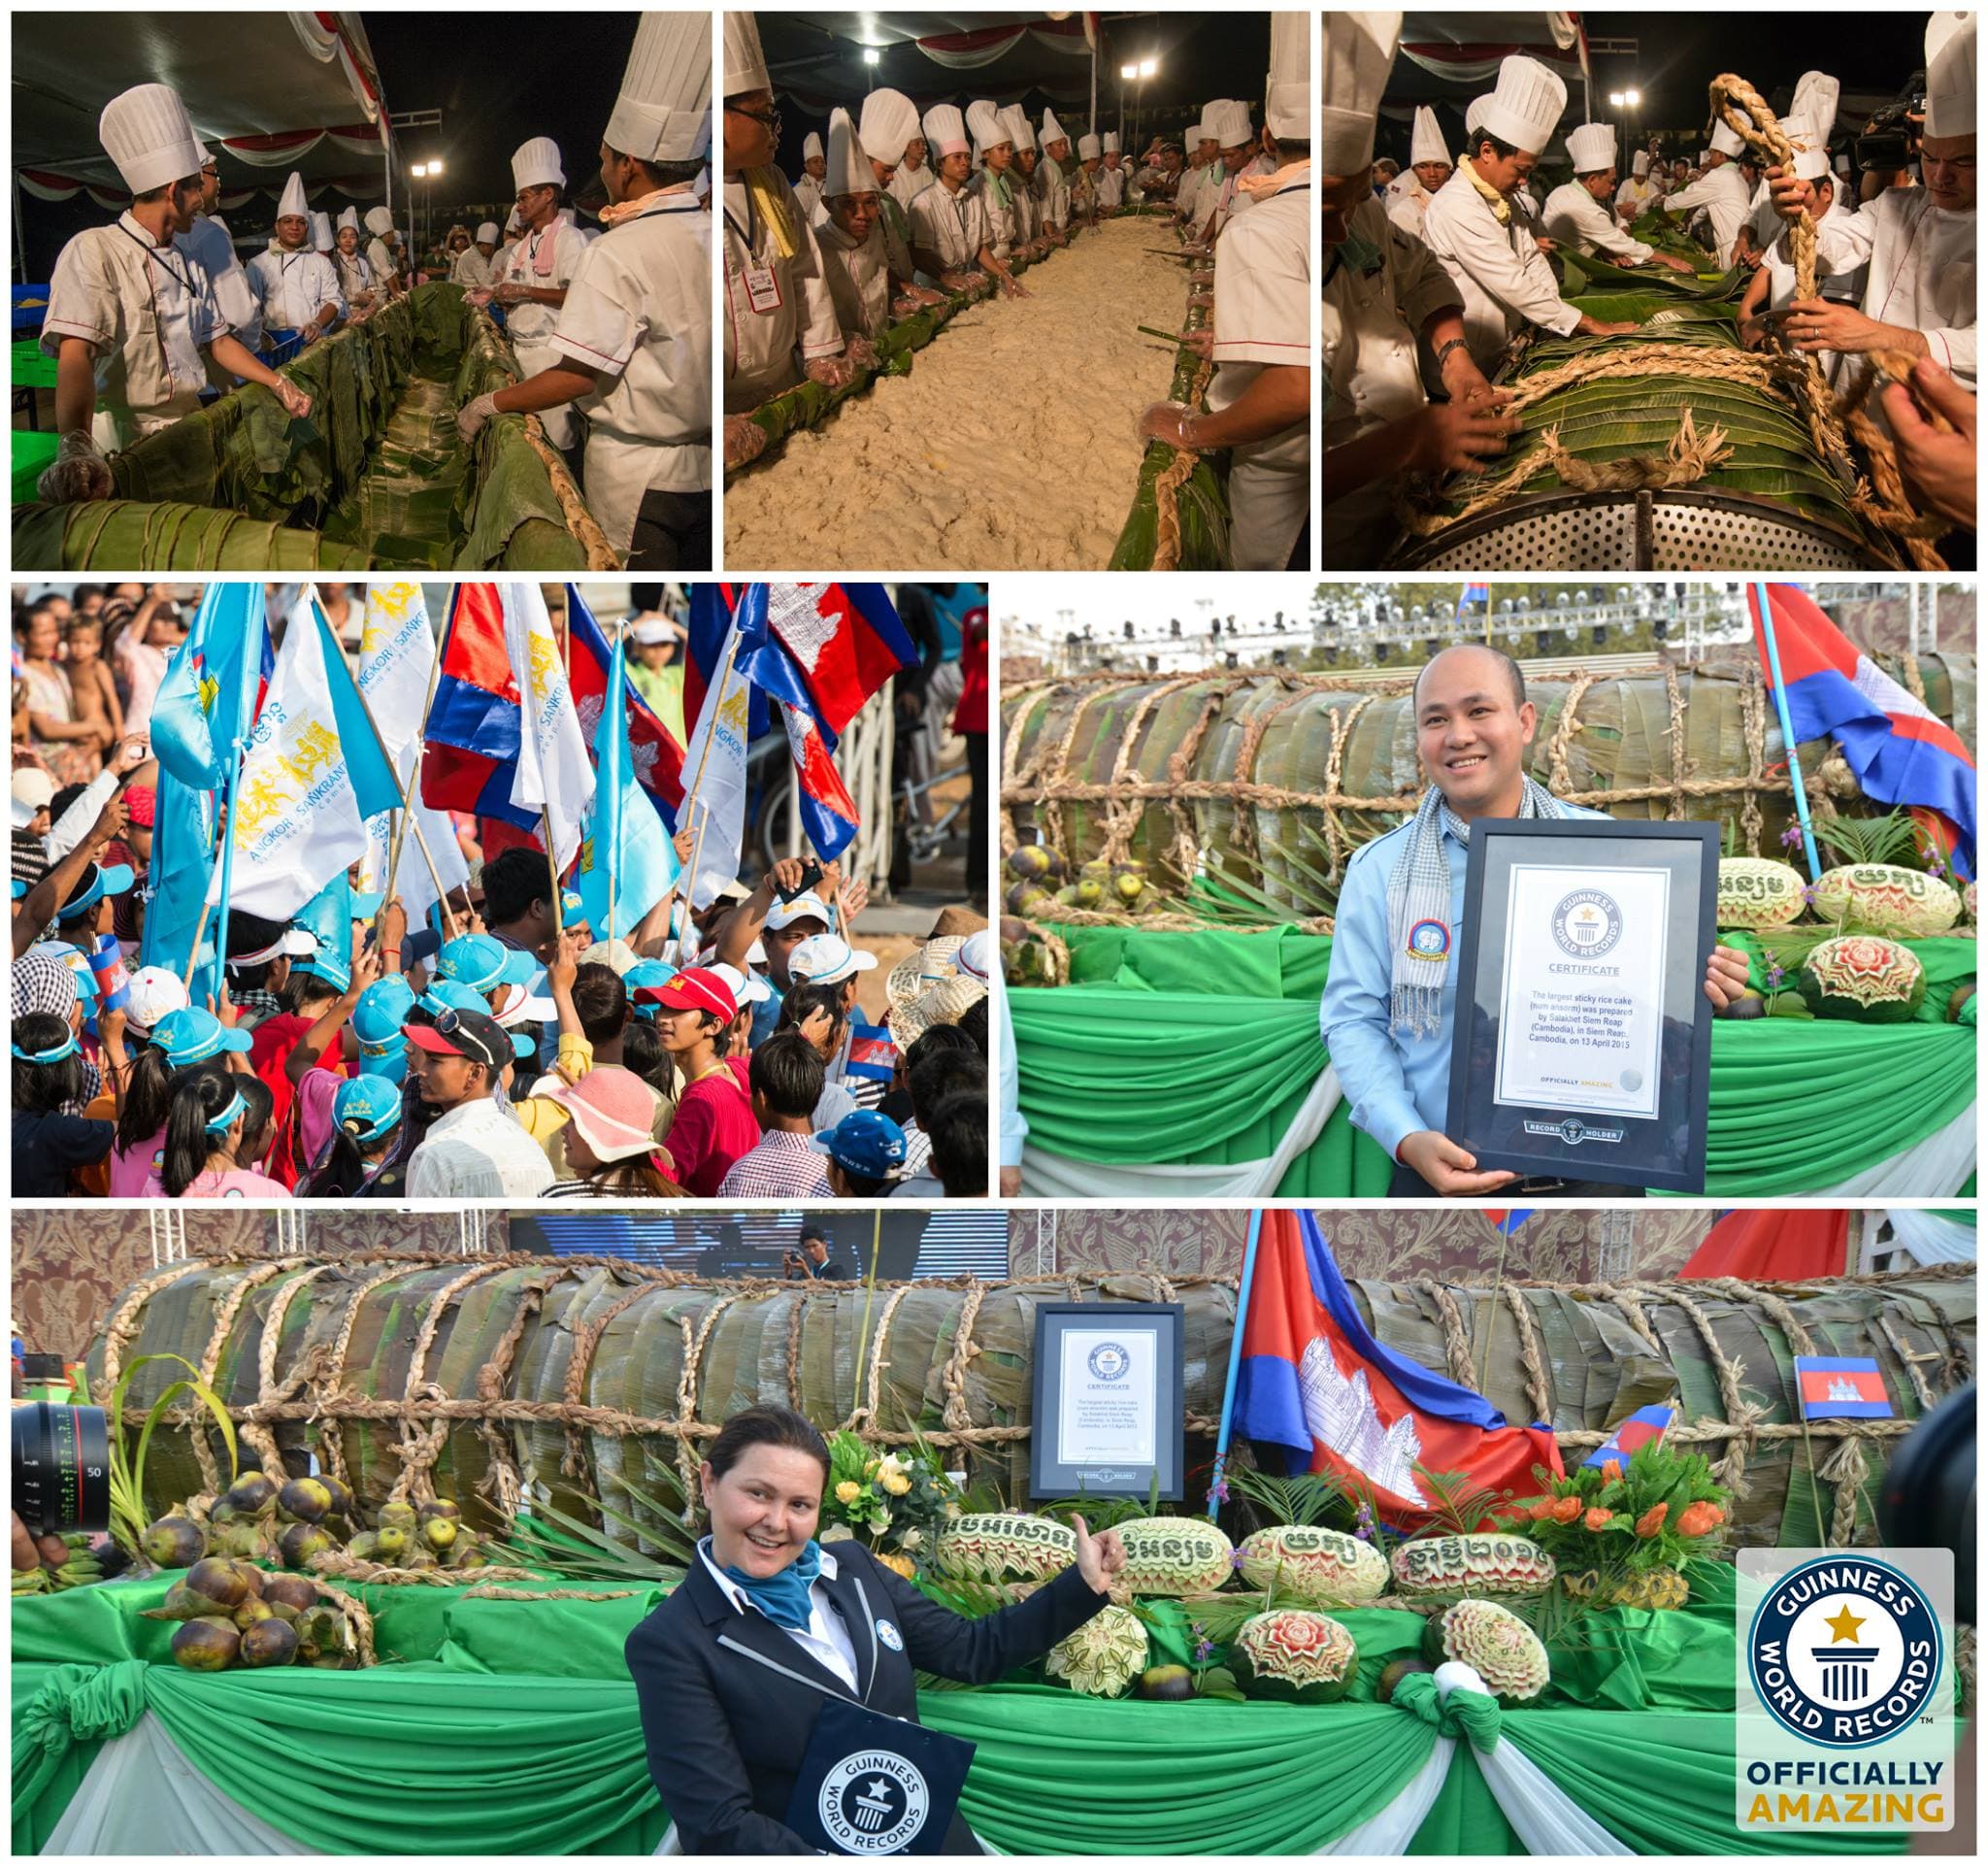 Cambodia’s Guinness World Records